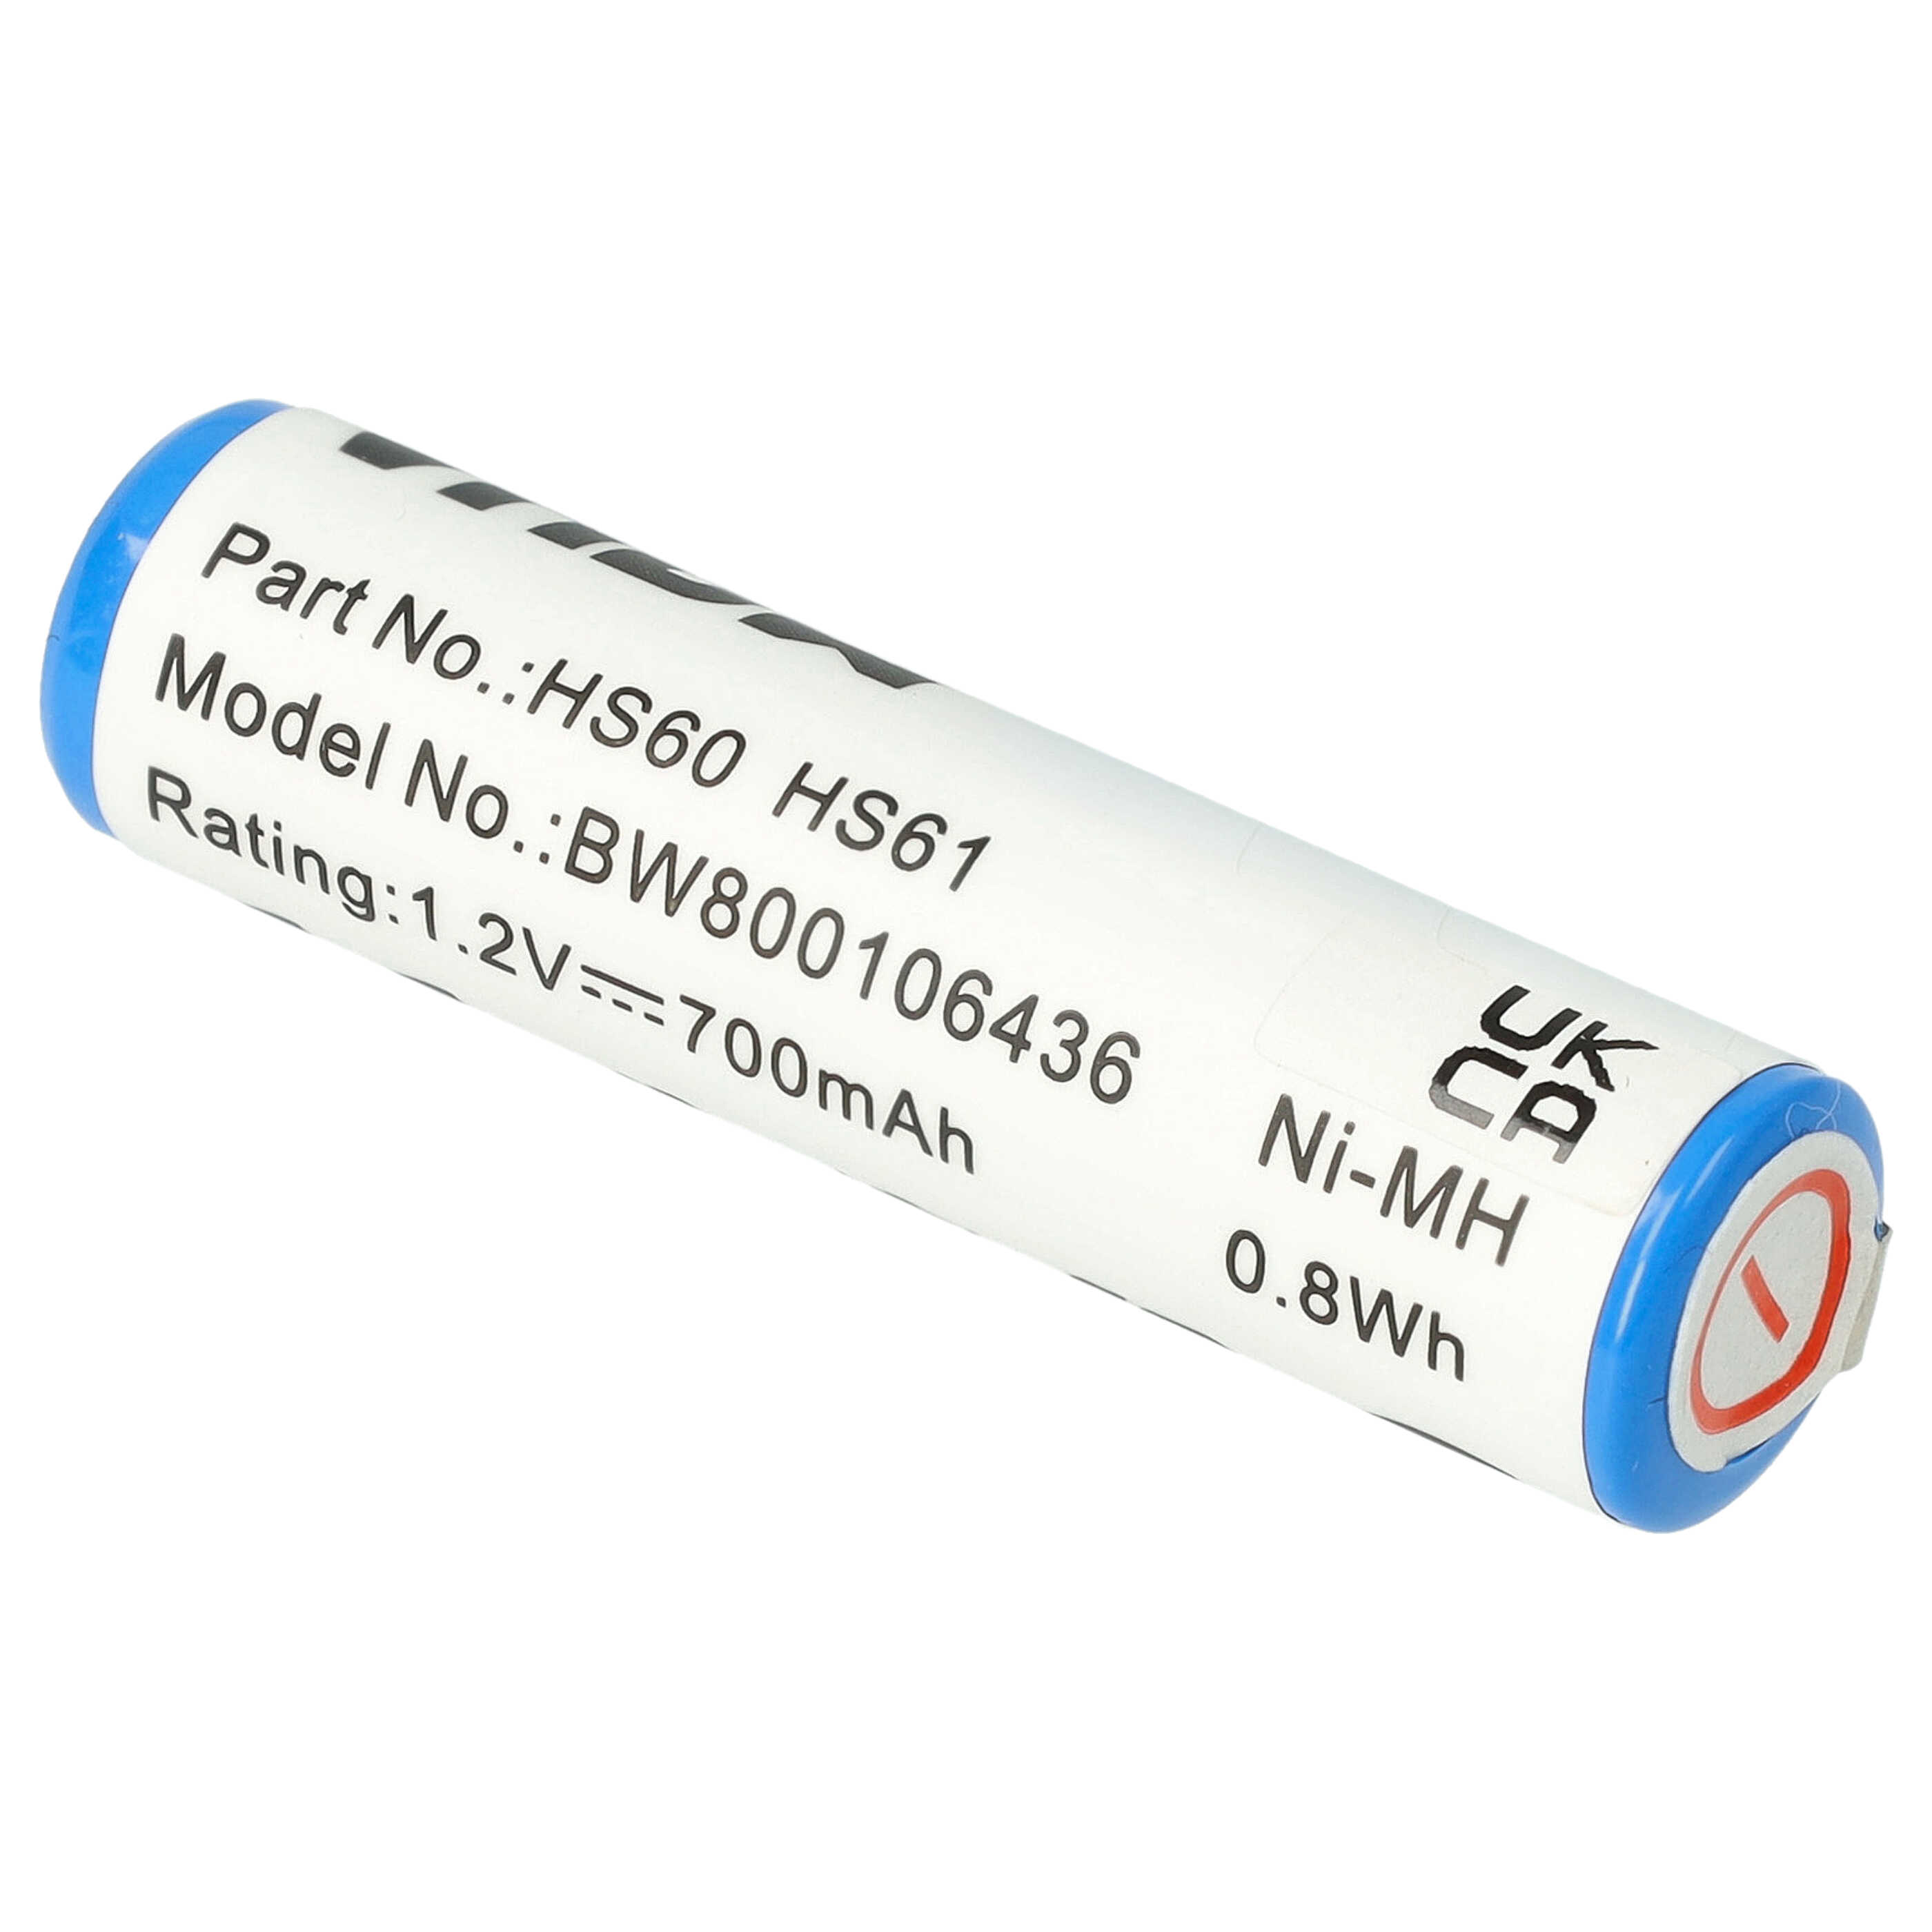 Batterie pour Wella Contura HS60, HS61 pour rasoir électrique - 700mAh 1,2V NiMH